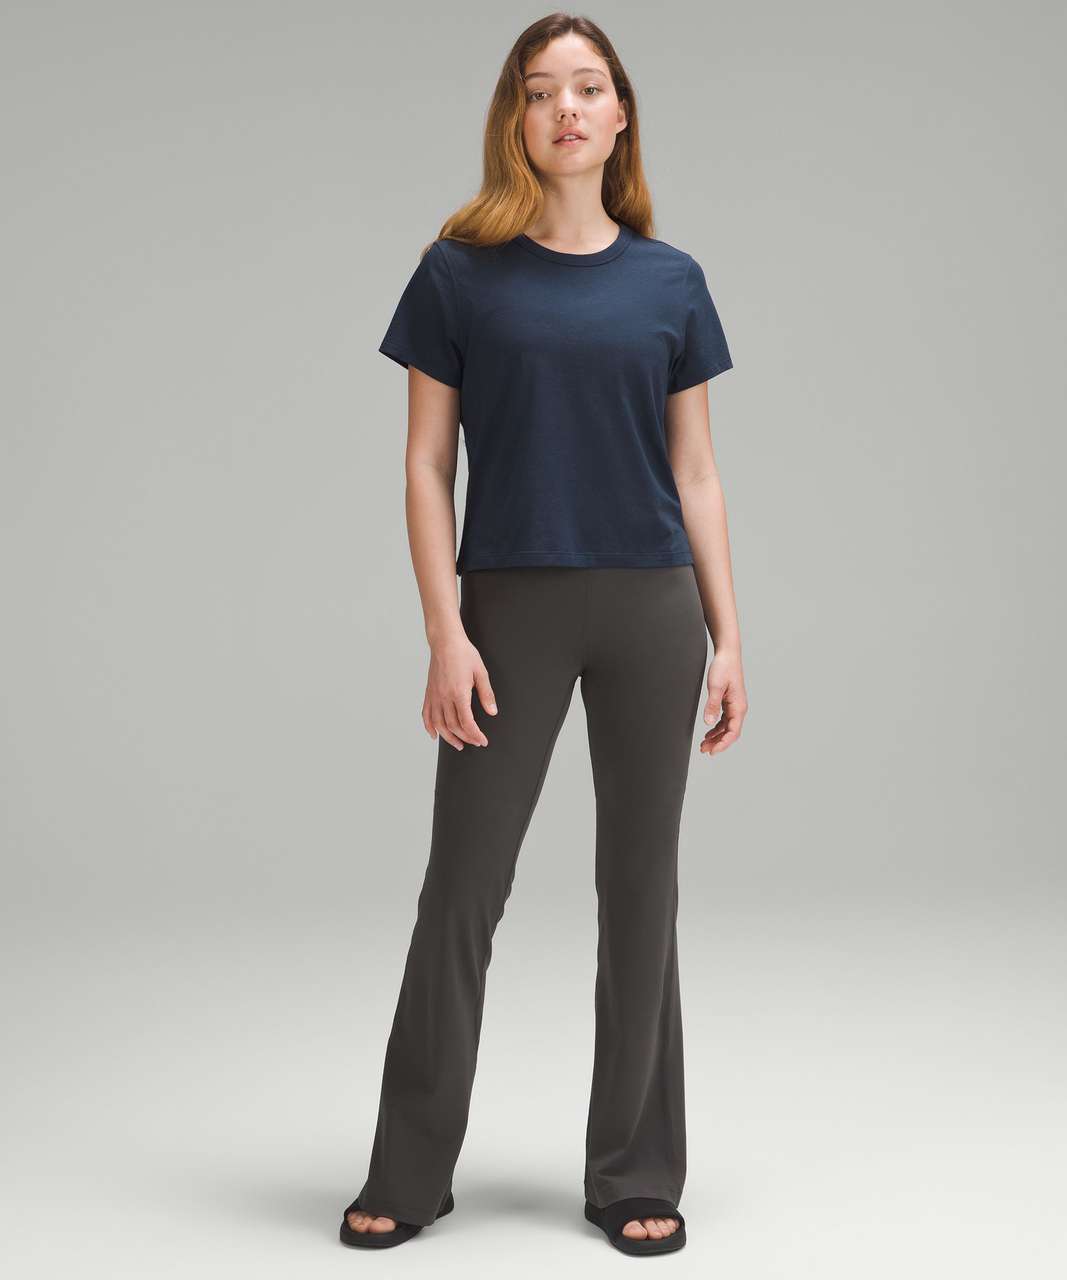 Lululemon Classic-Fit Cotton-Blend T-Shirt - True Navy